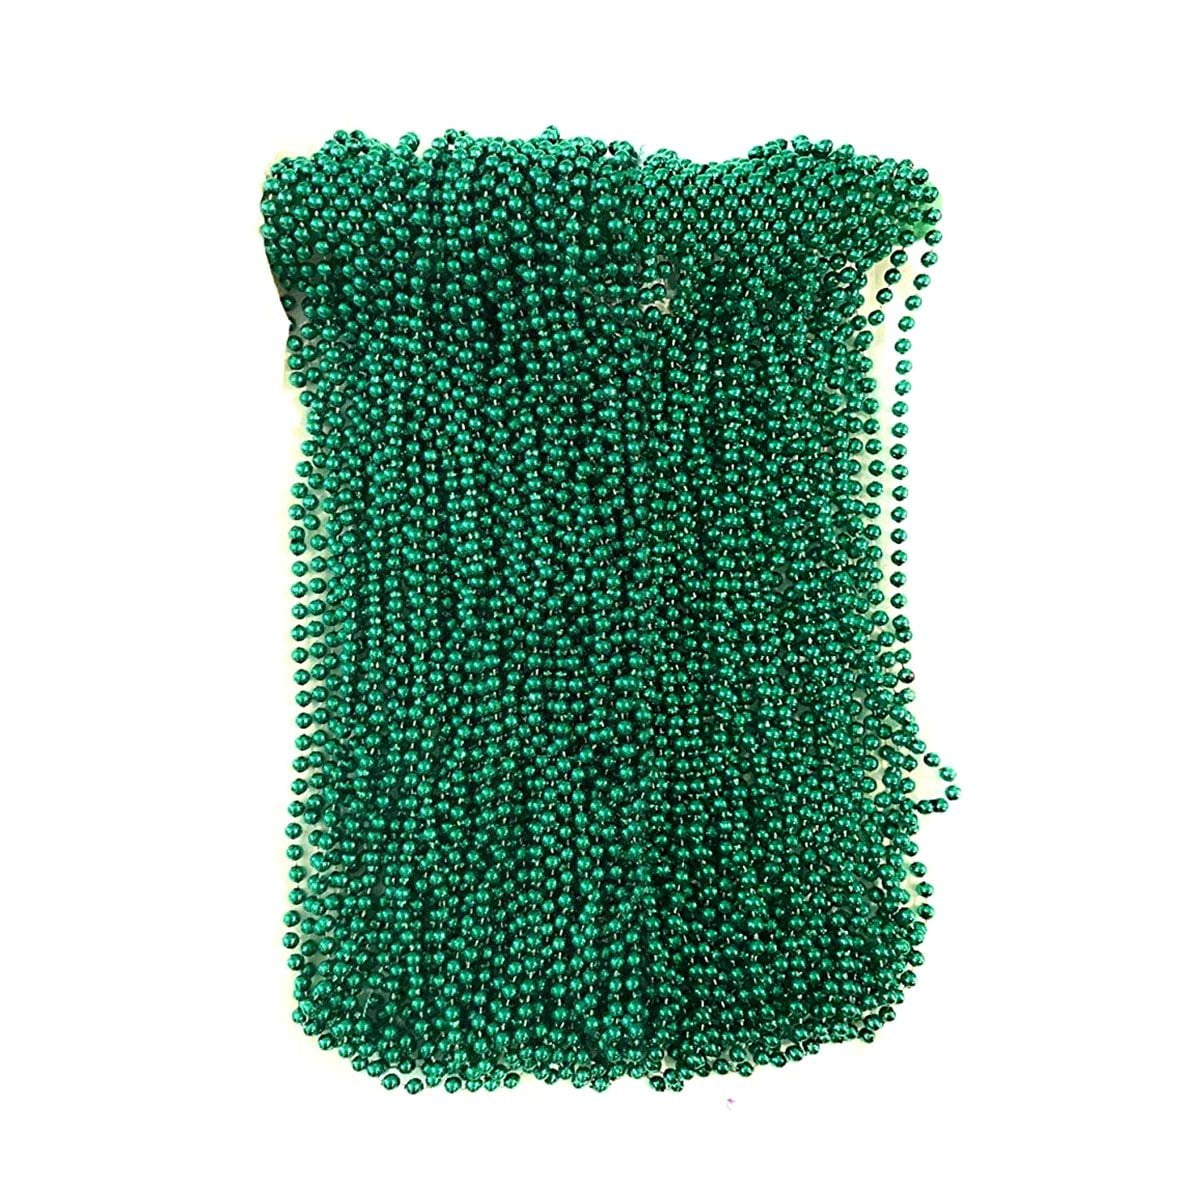 72 Color Choice Mardi Gras Beads Party Favors Necklaces 6 Dozen 7mm 33 inch 